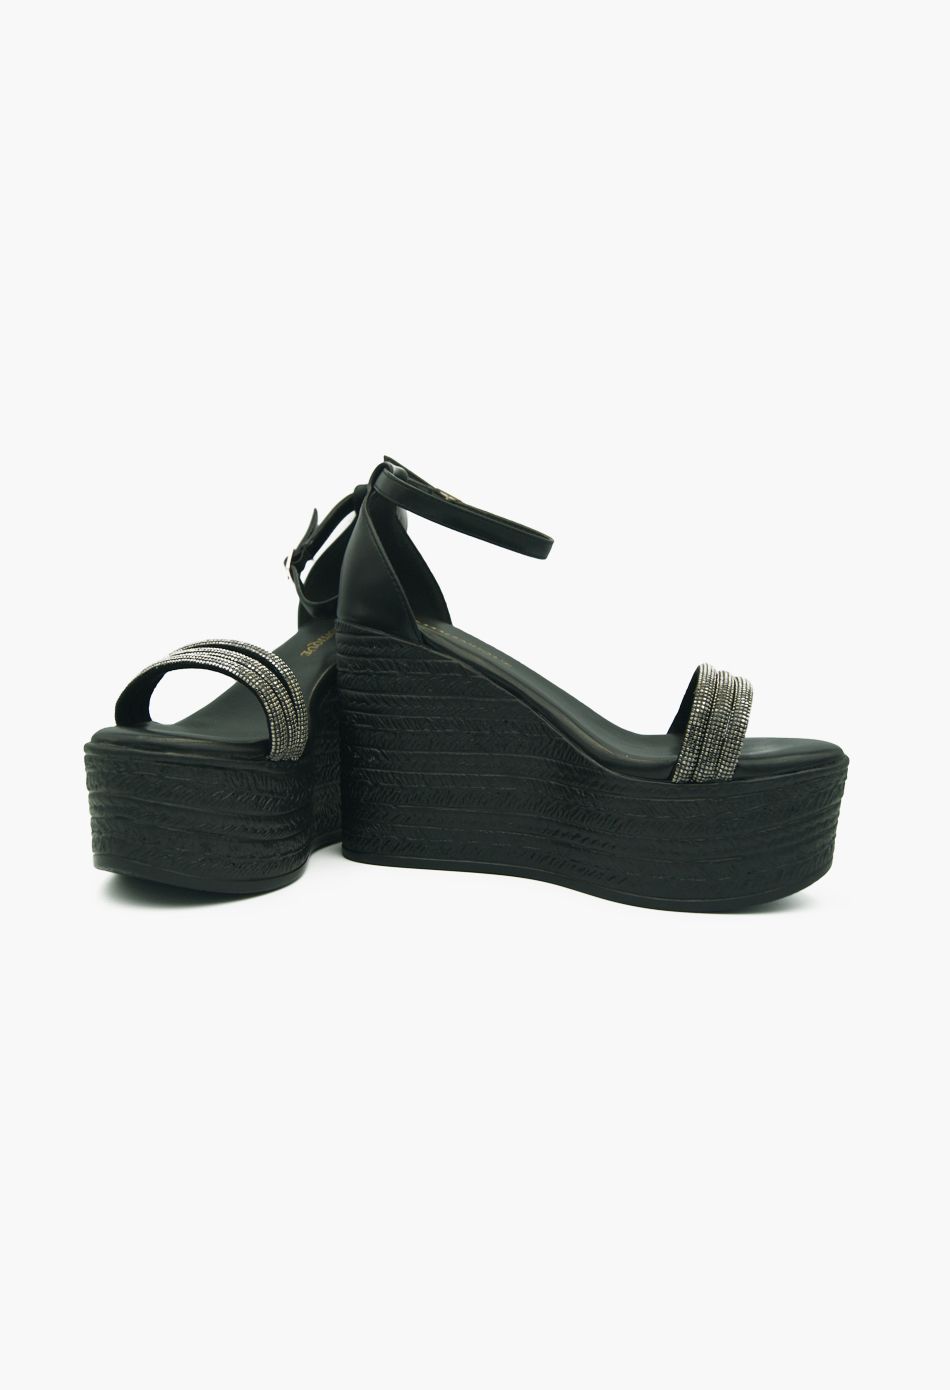 Πλατφόρμες με Λουριά απο Strass Μαύρο / Z-29-black Ανοιχτά Παπούτσια joya.gr